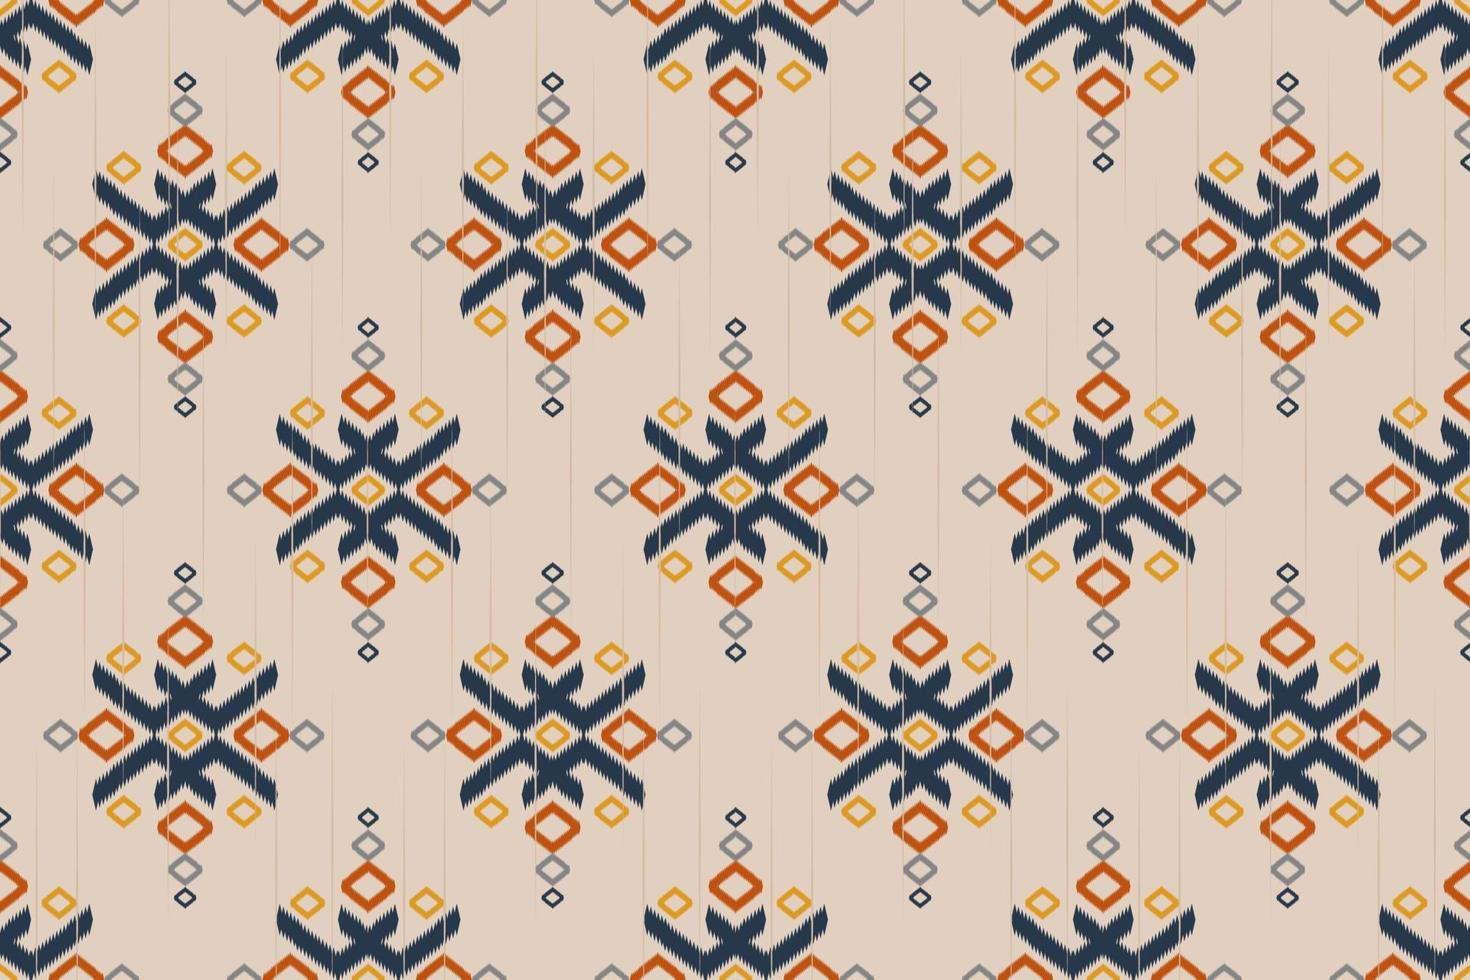 geométrico étnico oriental ikat de patrones sin fisuras tradicional. tela estilo indio. diseño para fondo, papel pintado, ilustración vectorial, tela, ropa, moqueta, textil, batik, bordado. vector